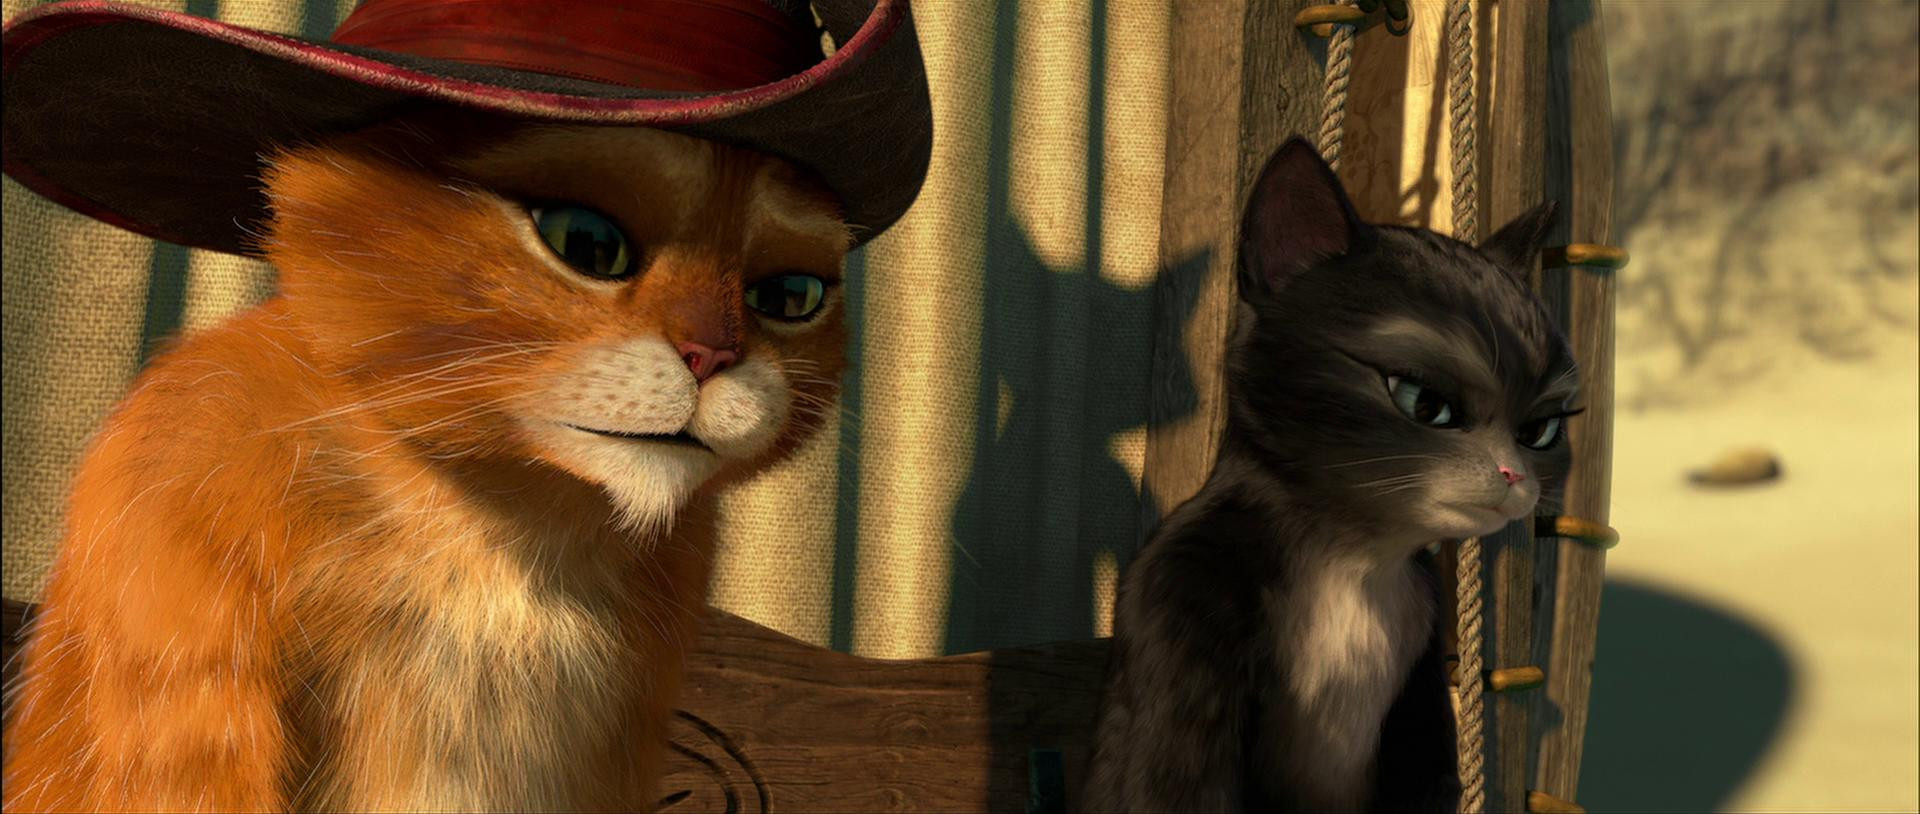 Кот в сапогах мультфильм 2011